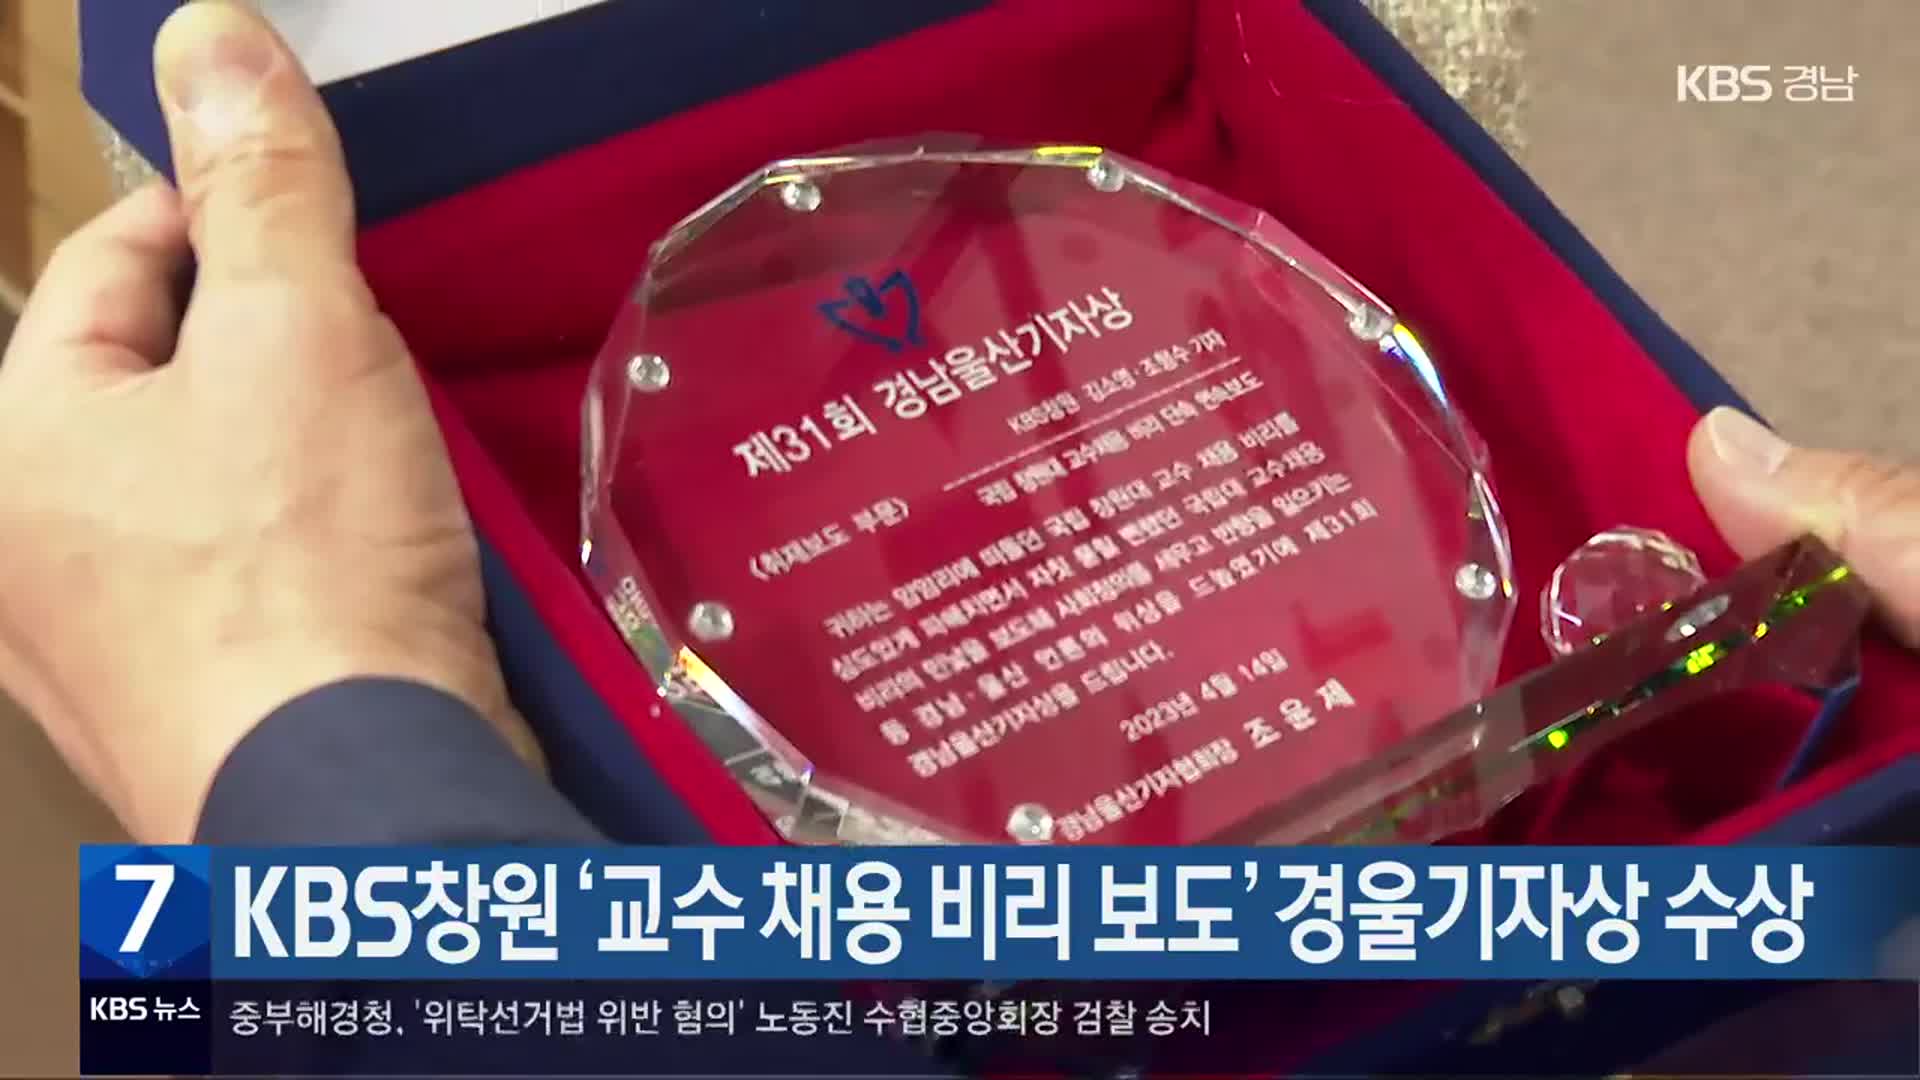 KBS창원 ‘교수 채용 비리 보도’ 경울기자상 수상